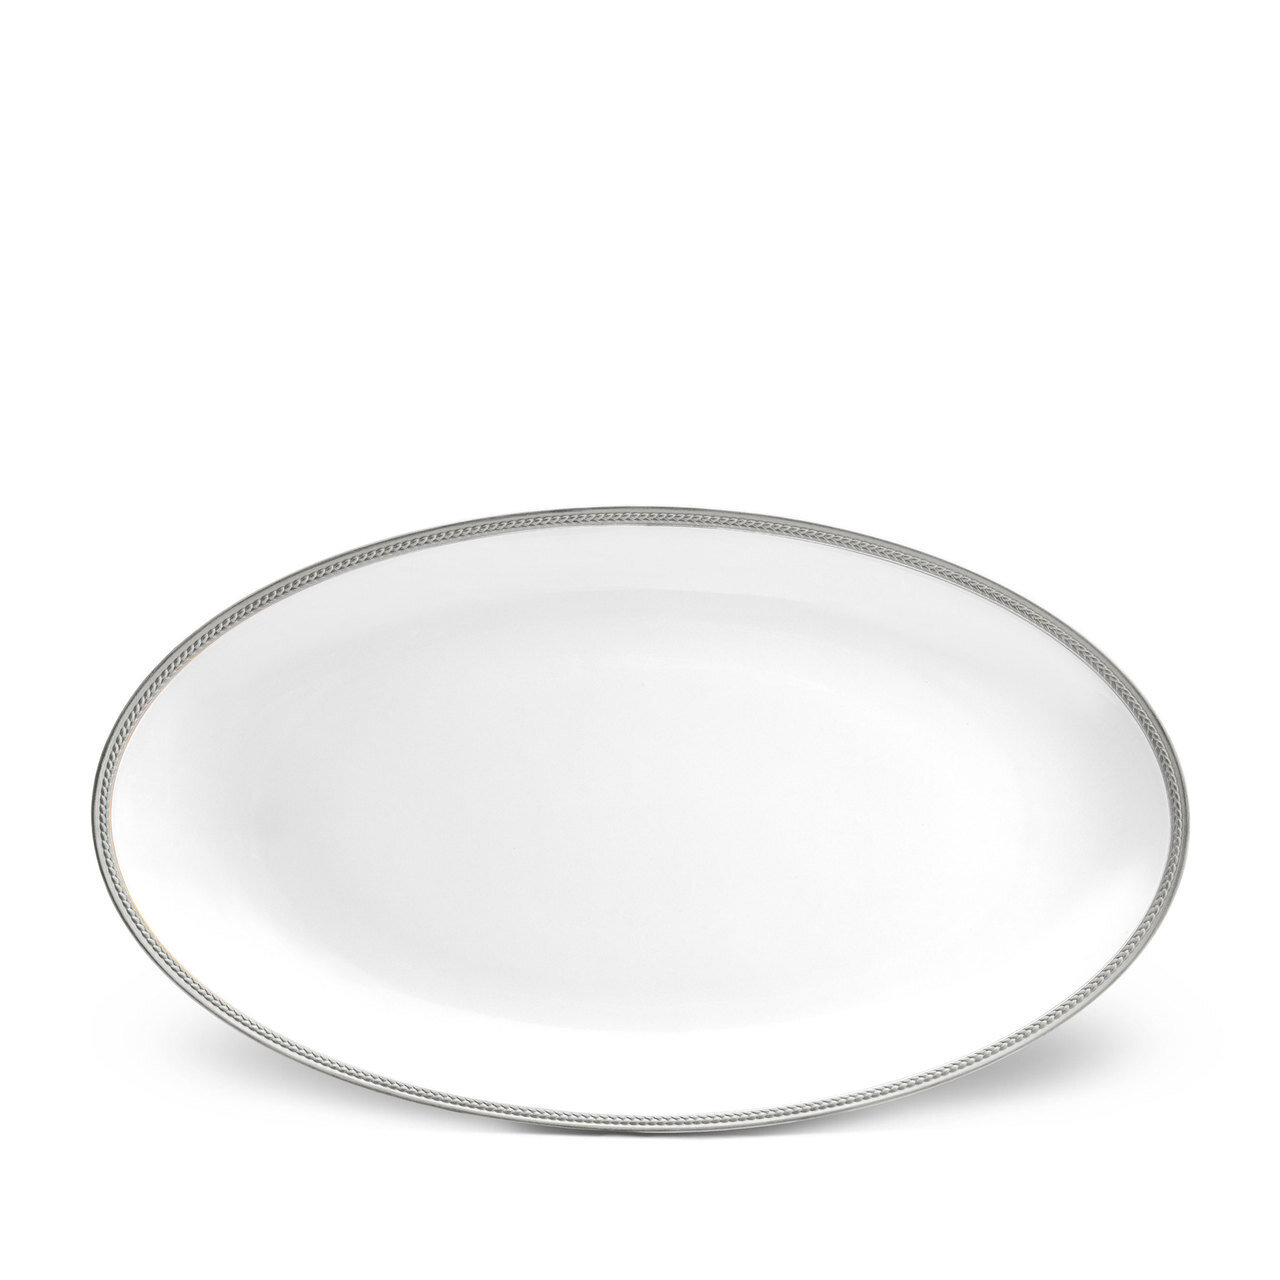 L'Objet Soie Tressee Large Oval Platter Platinum